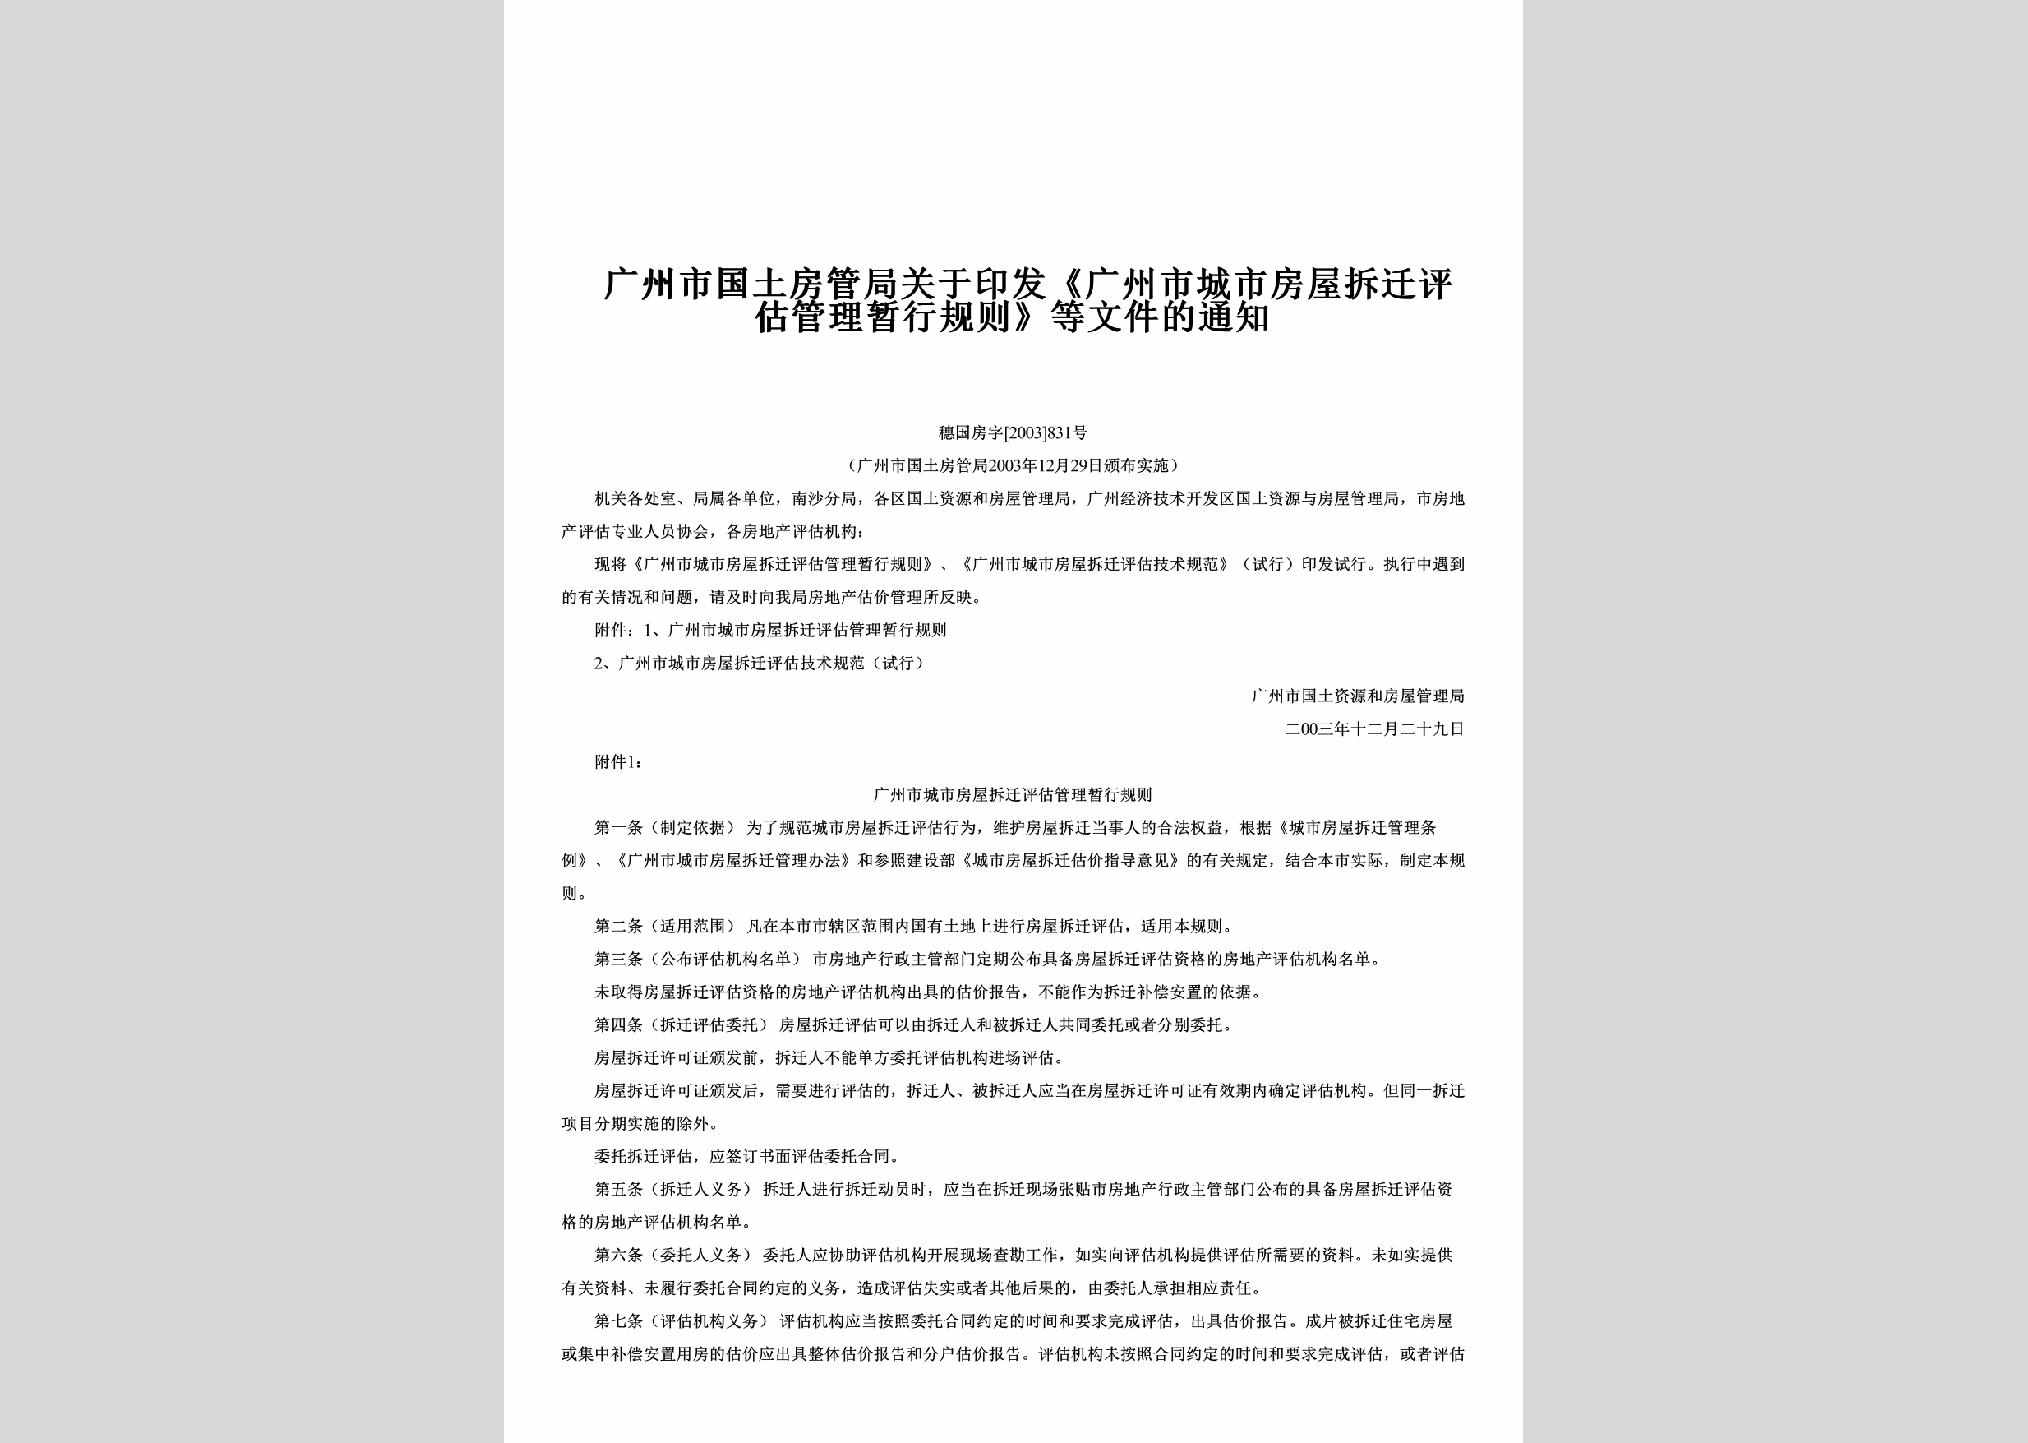 穗国房字[2003]831号：关于印发《广州市城市房屋拆迁评估管理暂行规则》等文件的通知